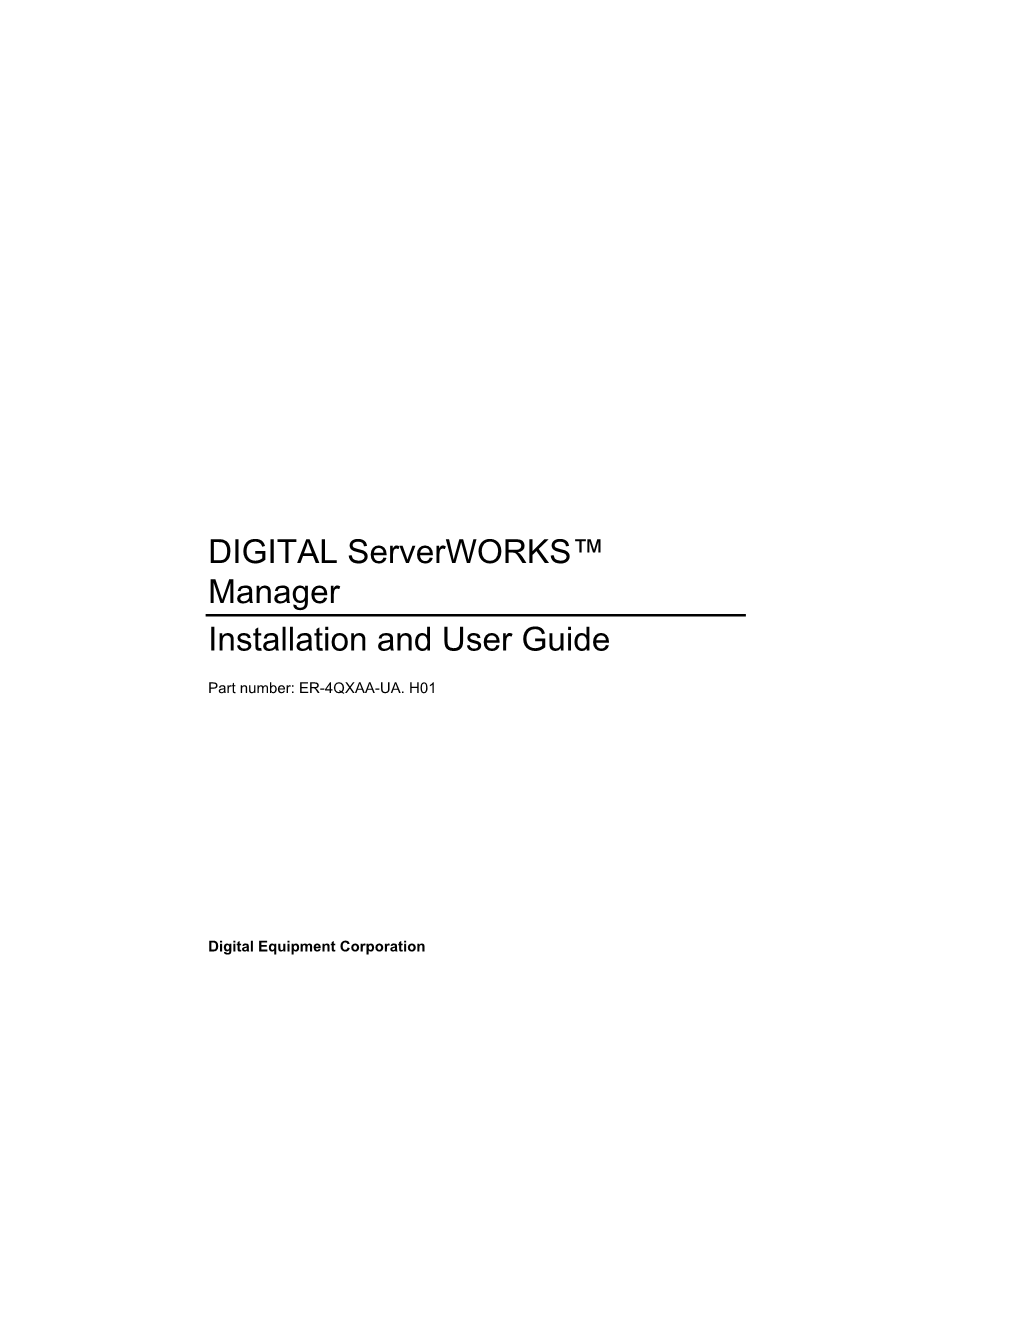 DIGITAL Serverworks Manager Installation and User Guide